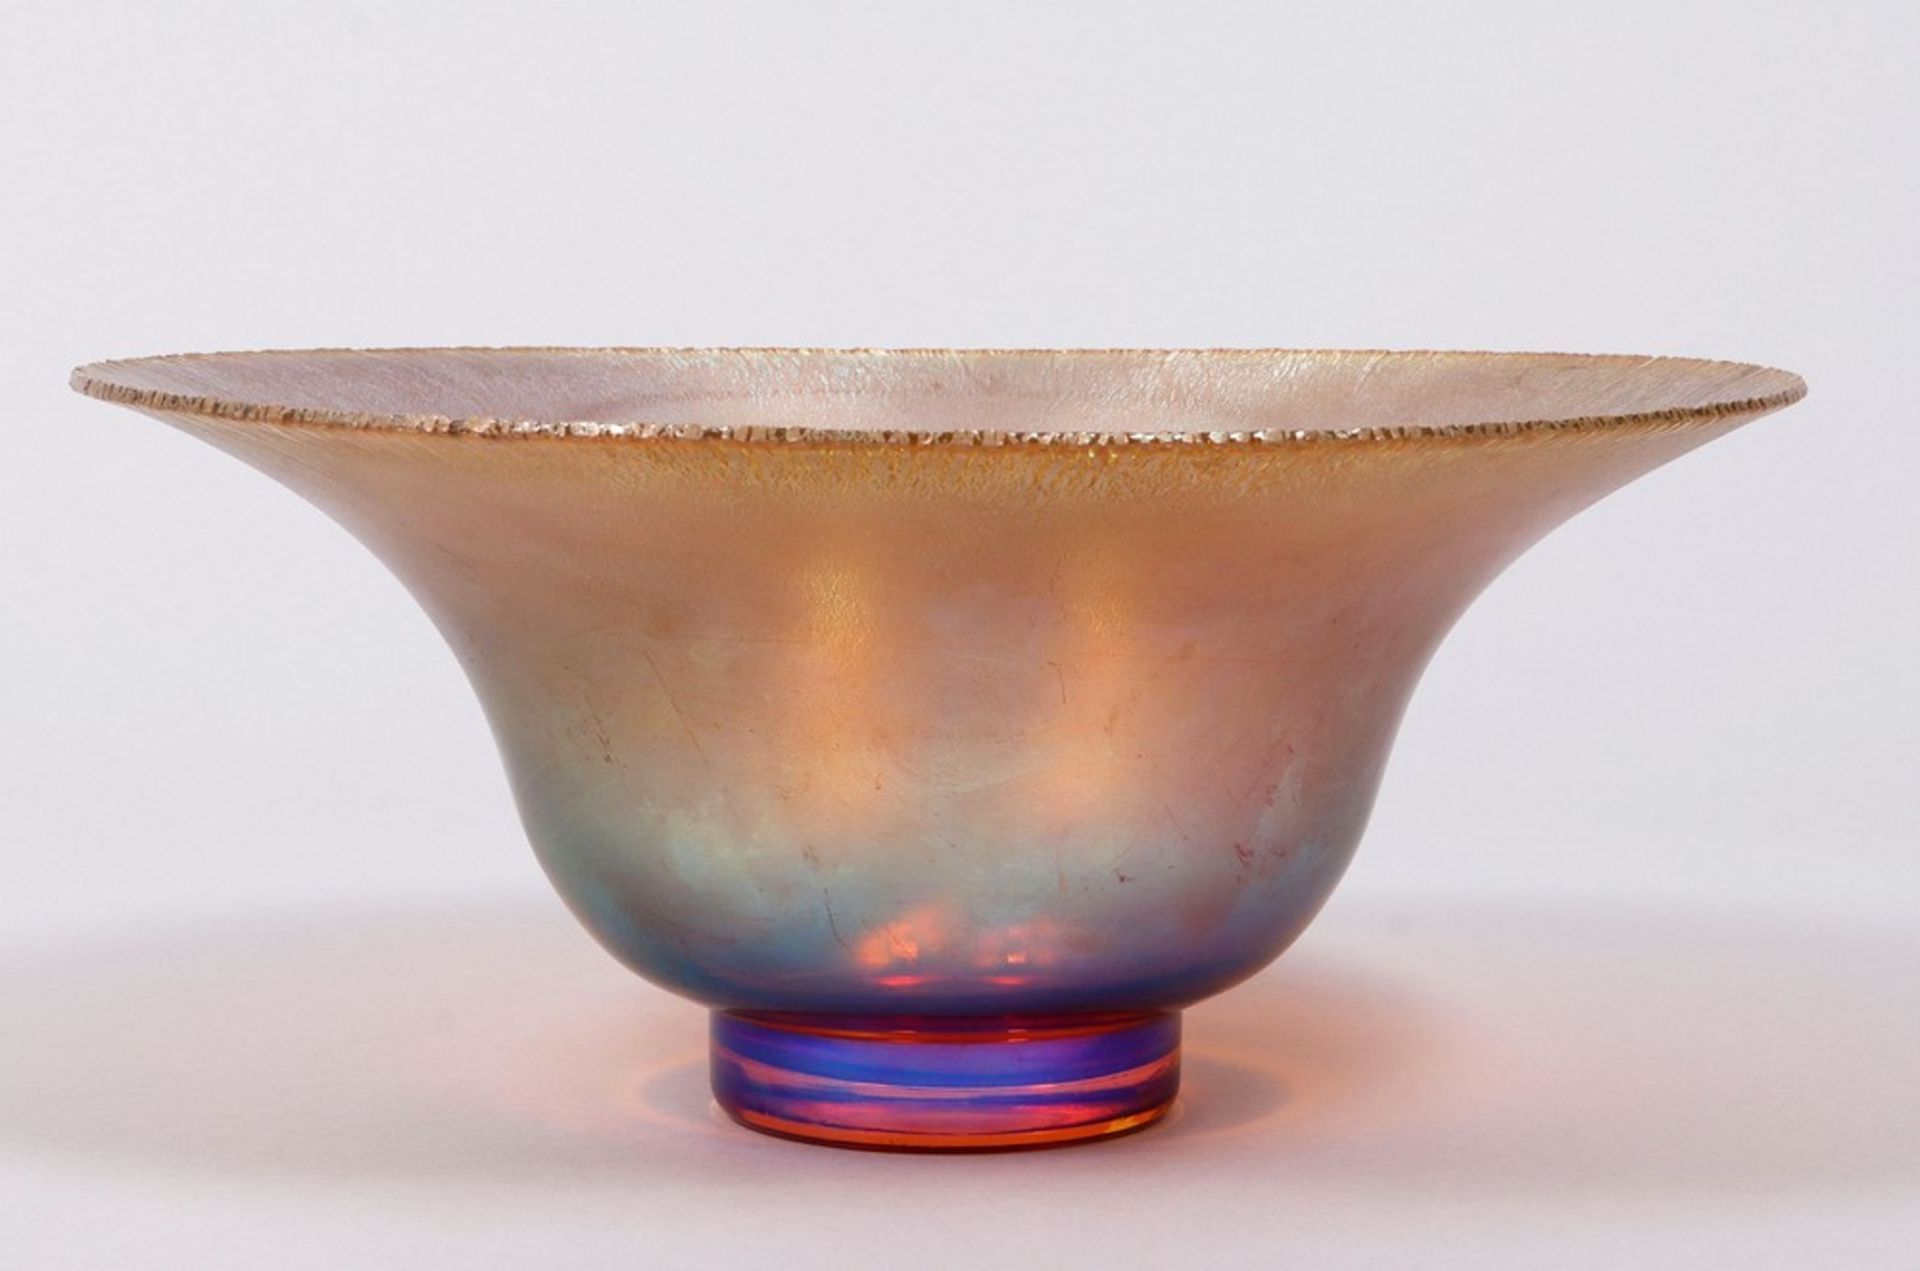 Large "Myra" bowl, WMF, c. 1930 - Image 2 of 4